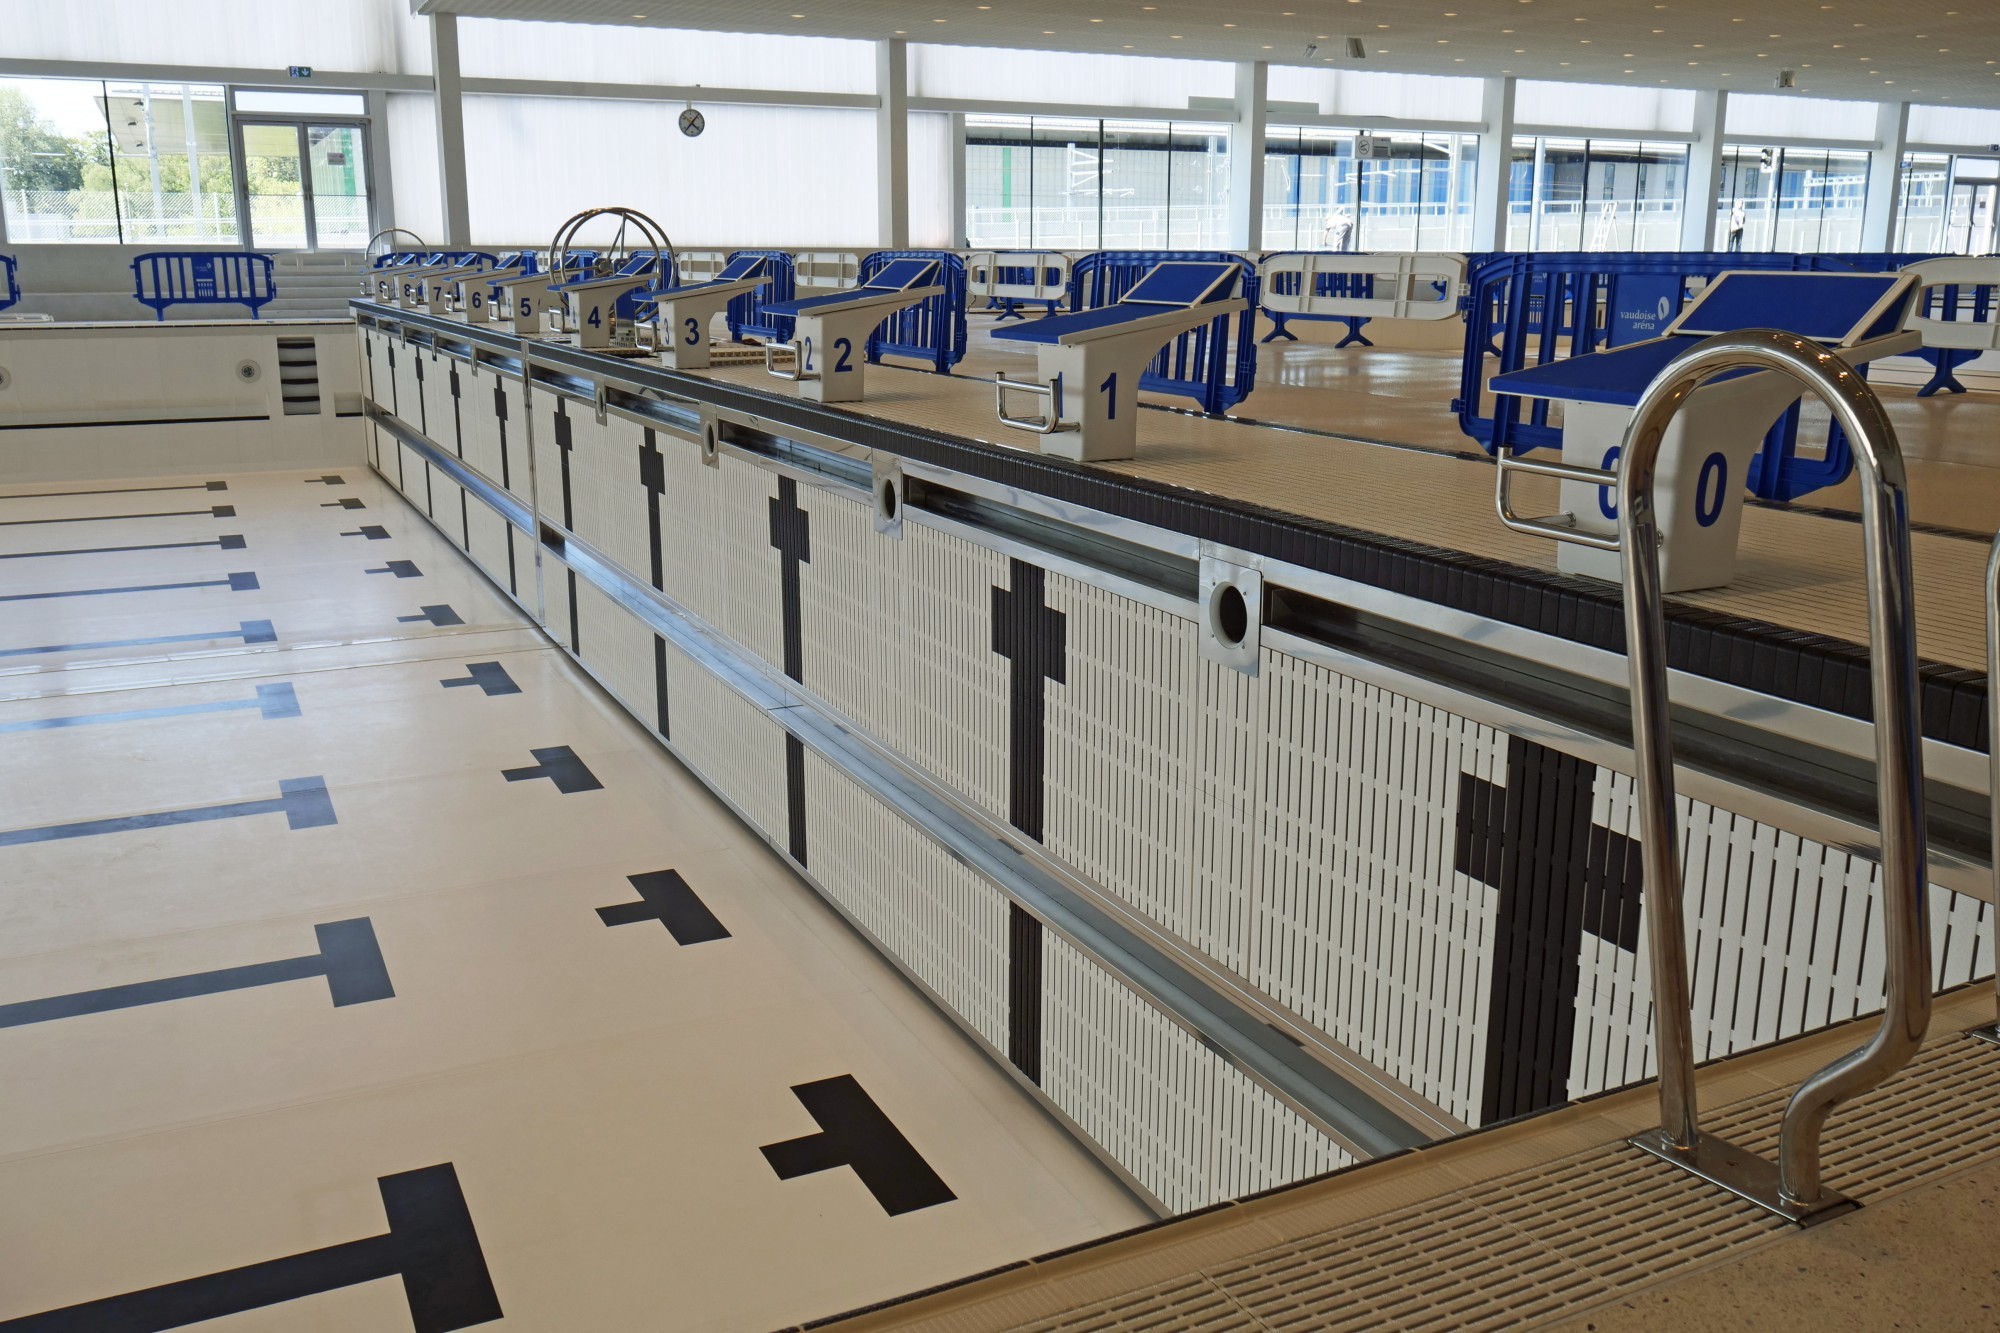 La fosse et les bassins de la Vaudoise Aréna présentent une flexibilité maximum. Grâce à un mur mobile et divisible, la piscine olympique peut être redimensionnée quasiment à volonté, offrant simultanément des lignes d’eau de 50 m et de 25 m.